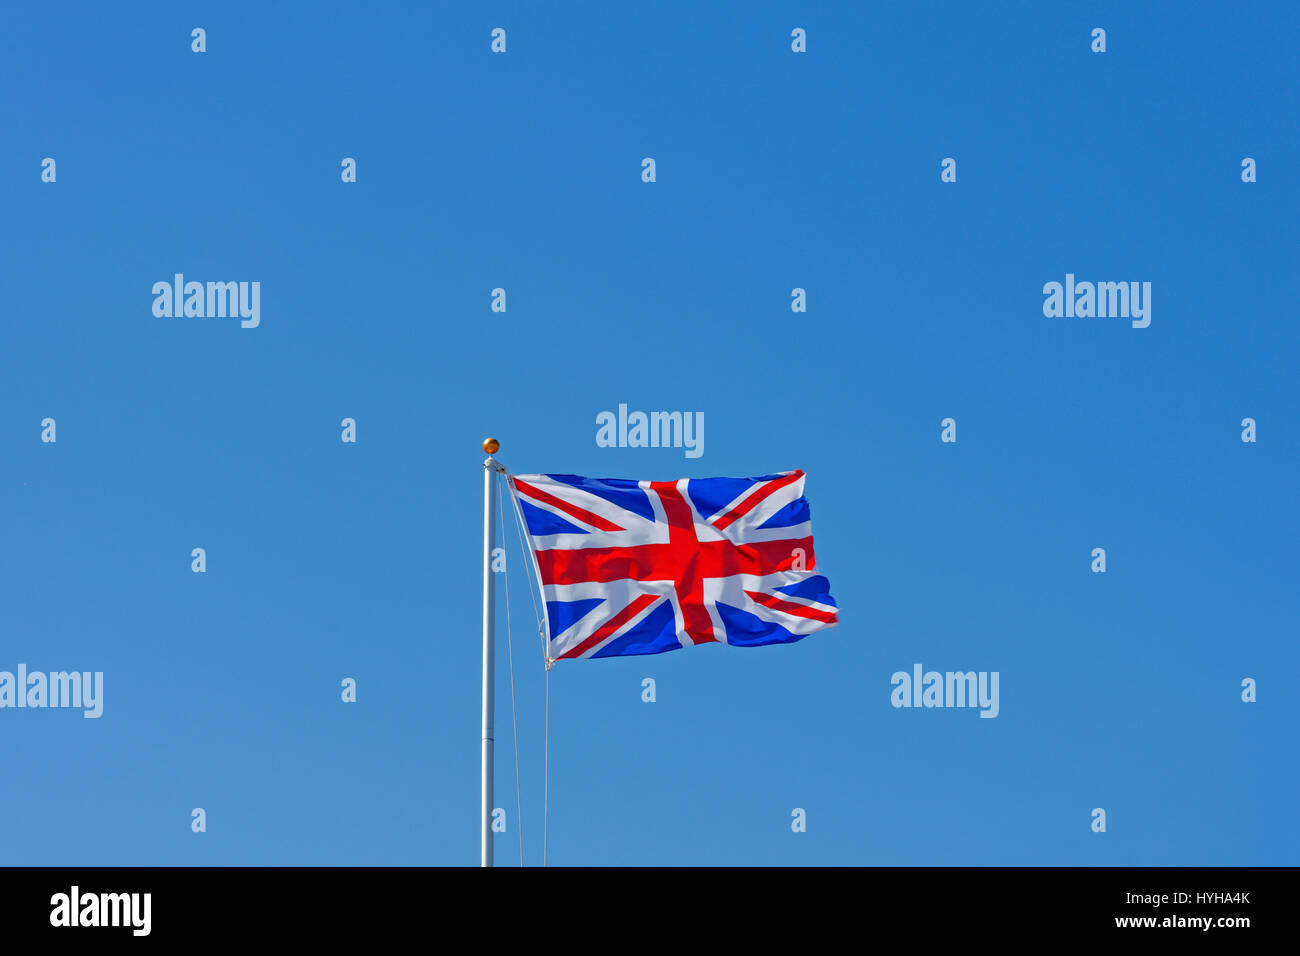 L'Union Jack, ou l'Union européenne Drapeau, est le drapeau national du Royaume-Uni. Banque D'Images